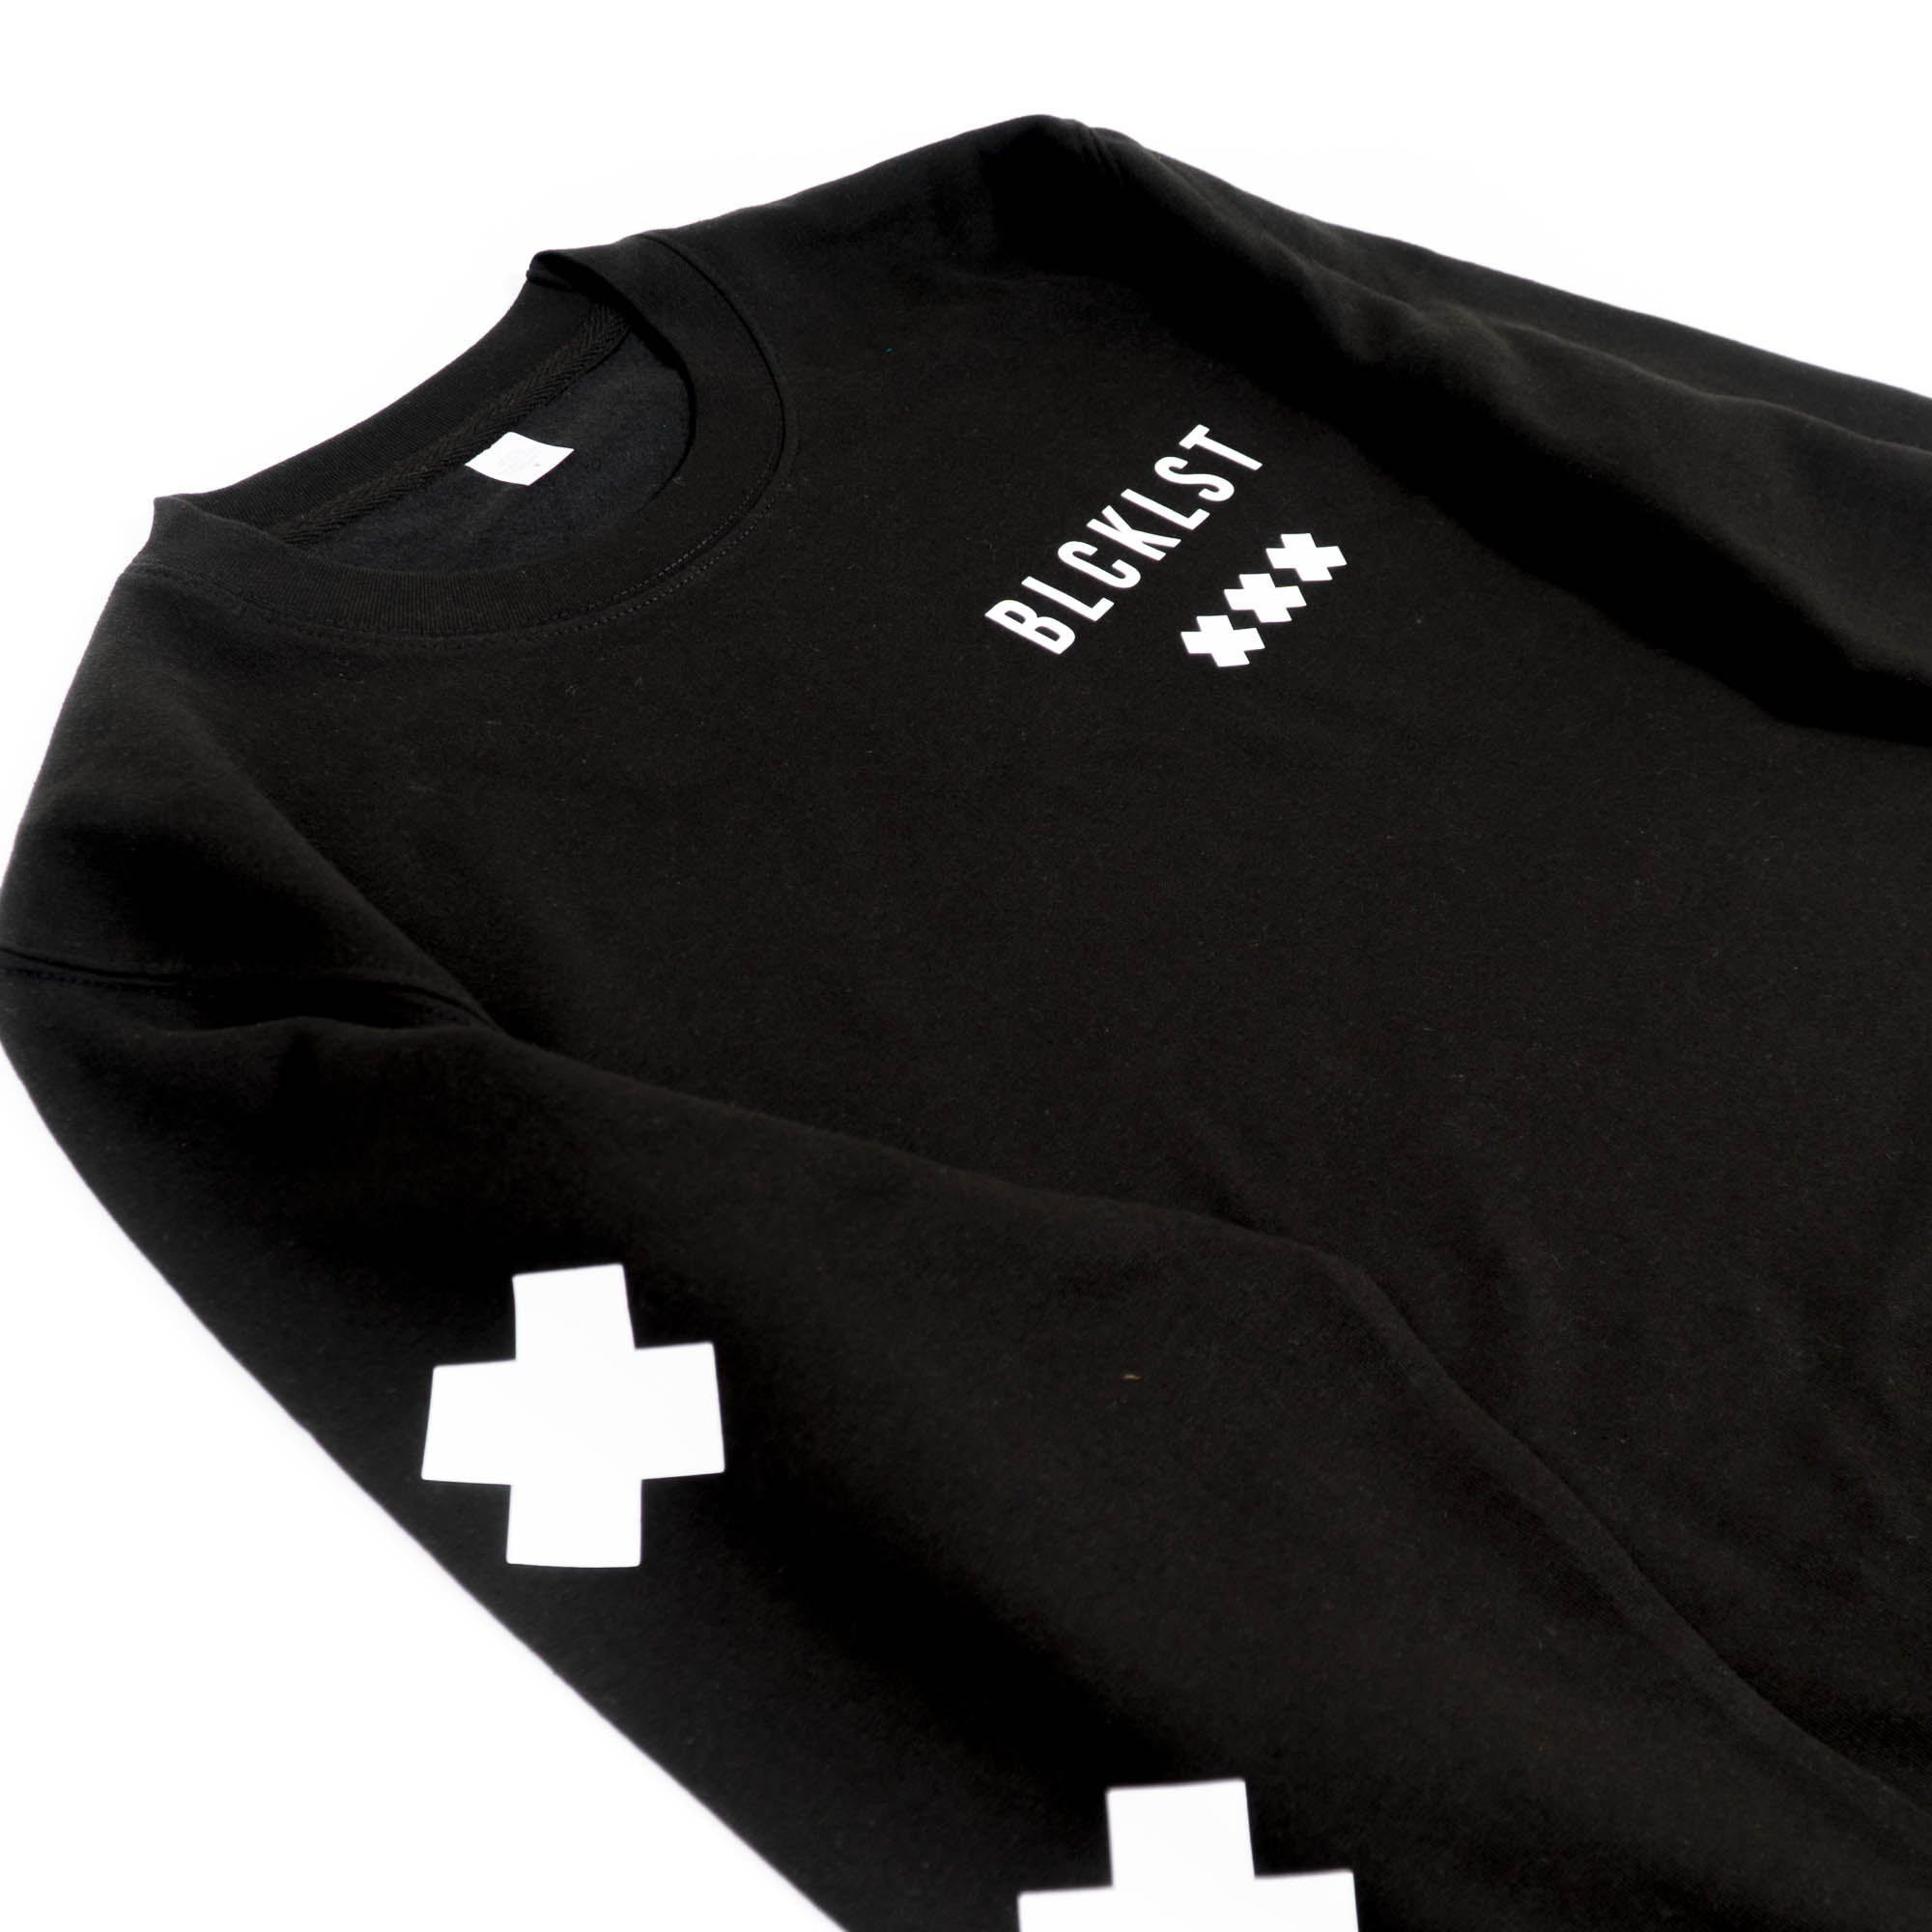 Blacklist - Collection 1 Sweatshirt